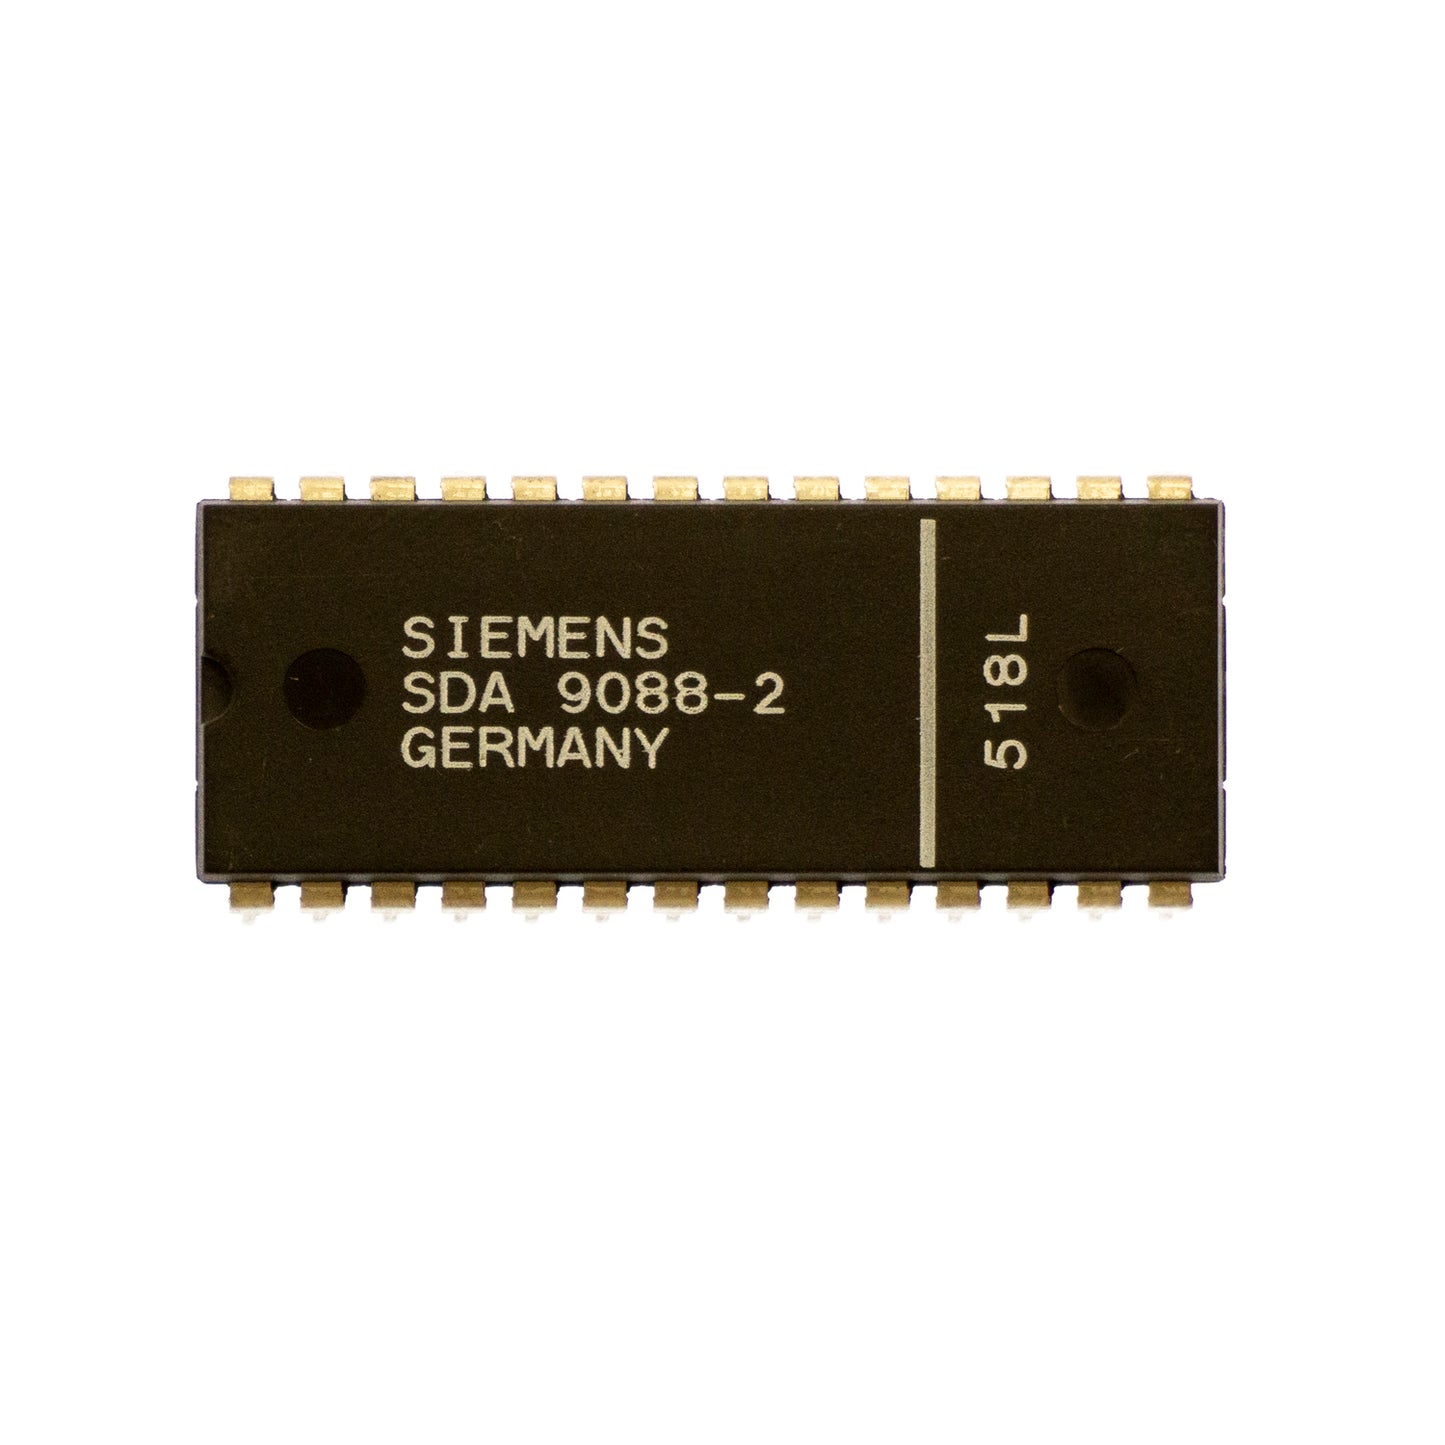 Siemens SDA9088 circuito integrato, transistor, componente elettronico, 28 contatti